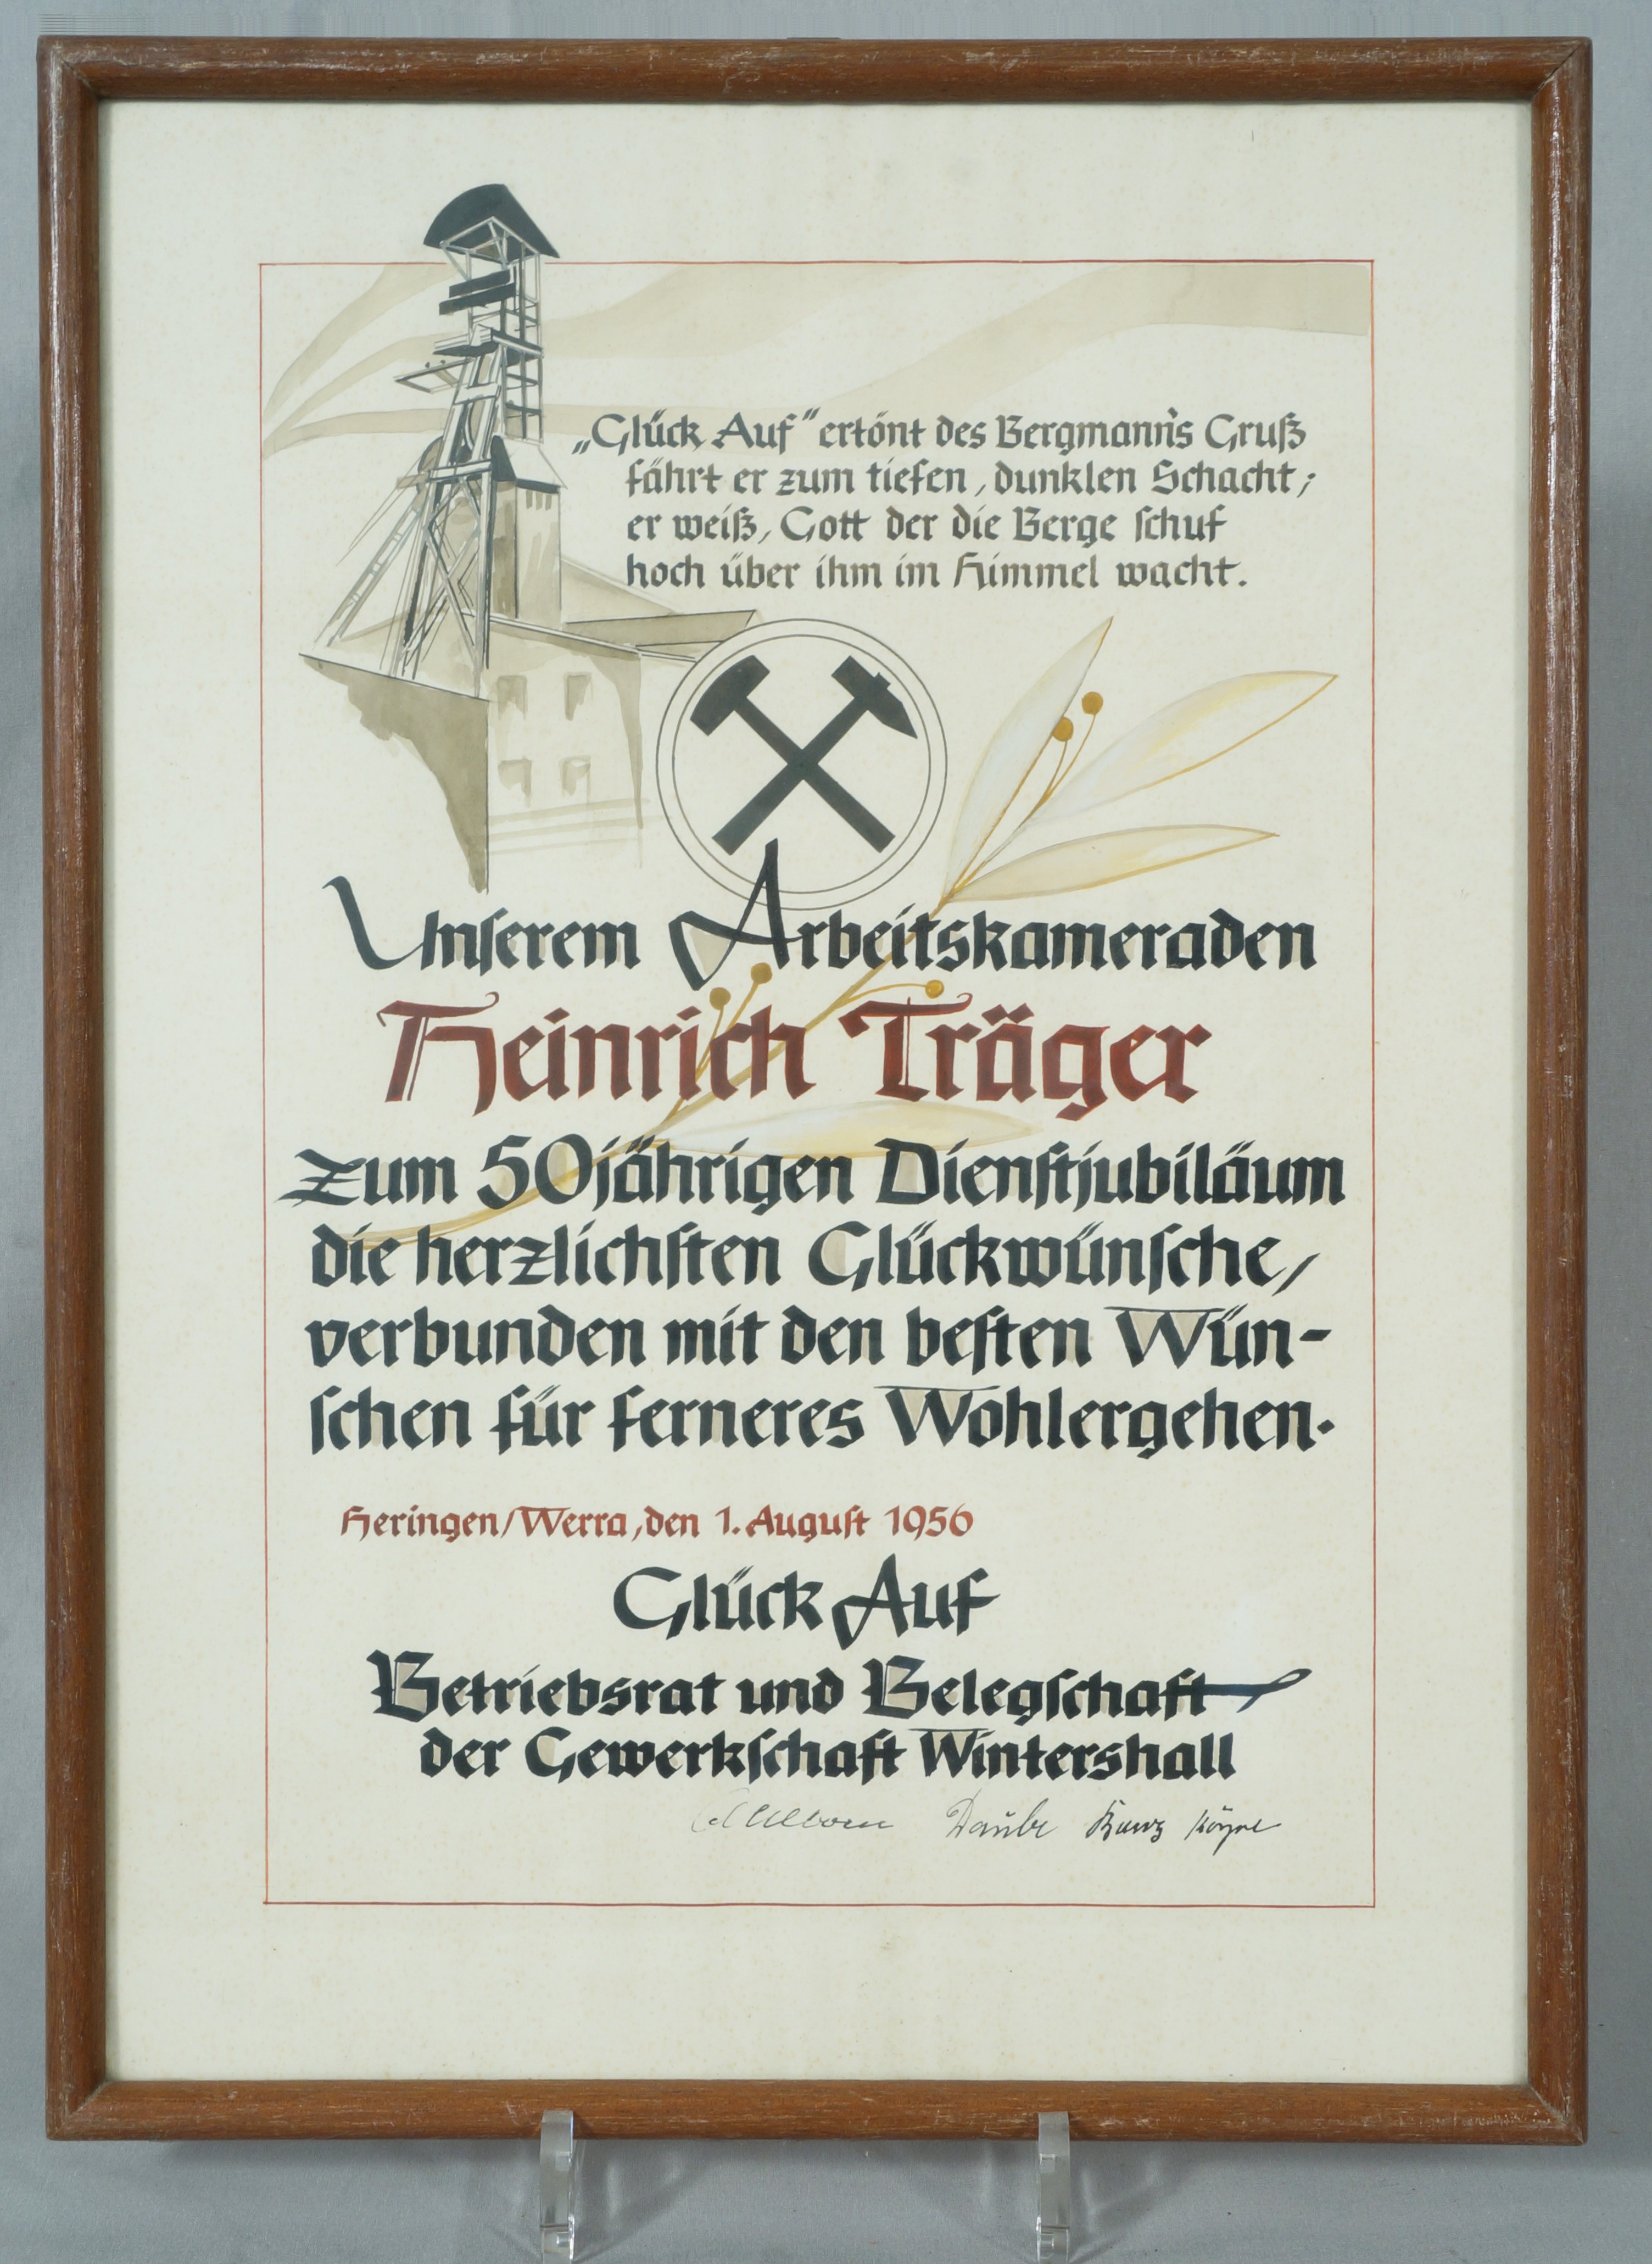 Urkunde zum 50-jährigen Dienstjubiläum bei der Gewerkschaft Wintershall (Betriebsrat und Belegschaft) (Werra-Kalibergbau-Museum, Heringen/W. CC BY-NC-SA)